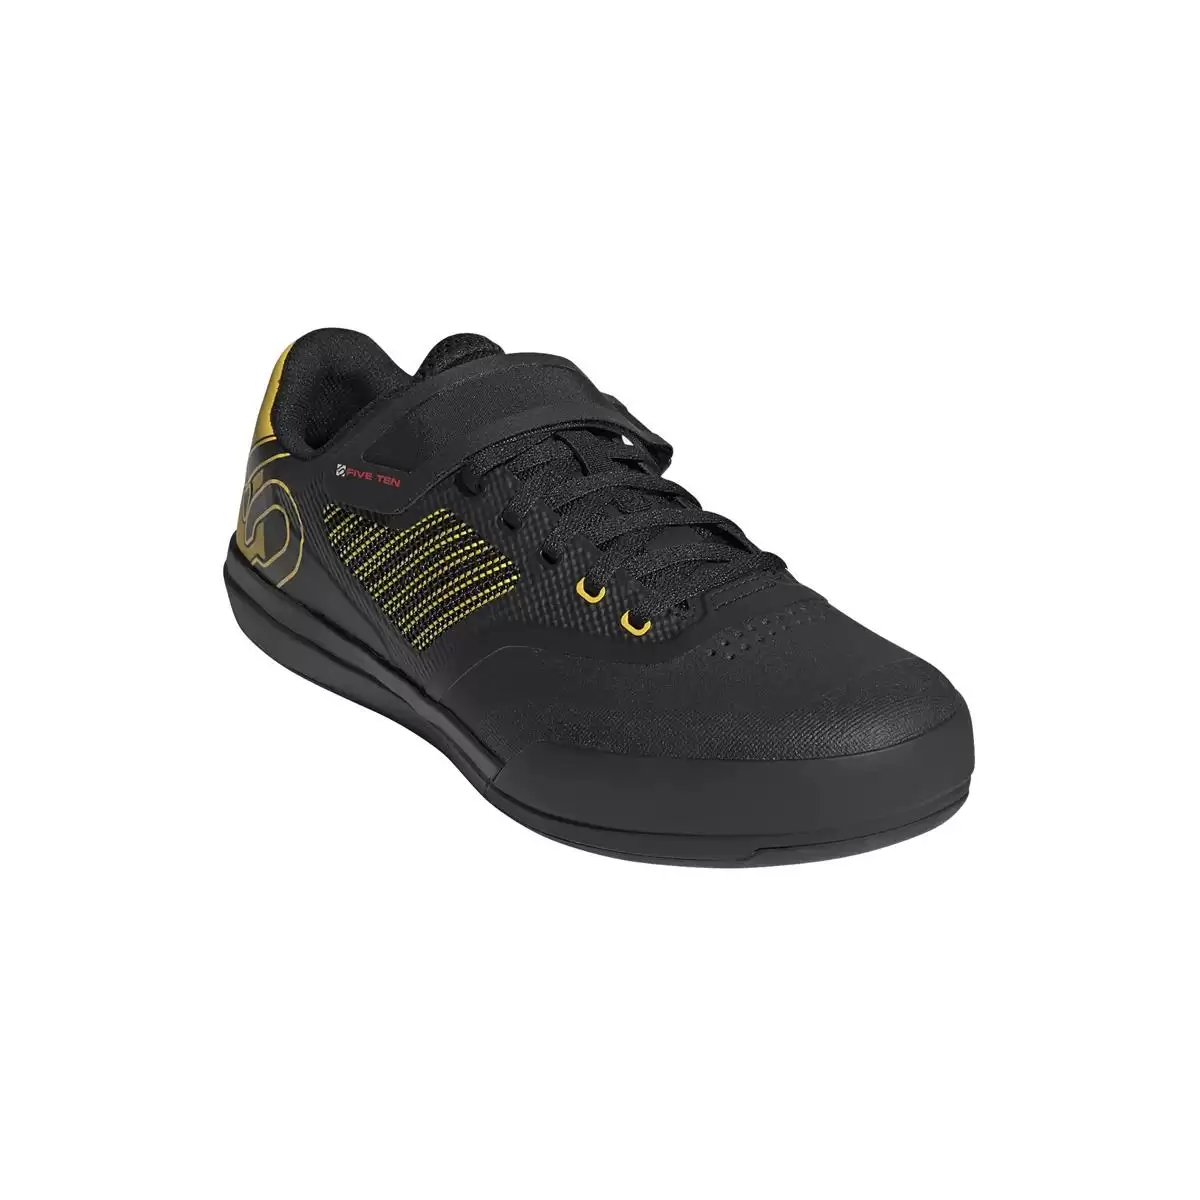 Chaussures VTT Hellcat Pro Noir/Jaune Taille 36 #1